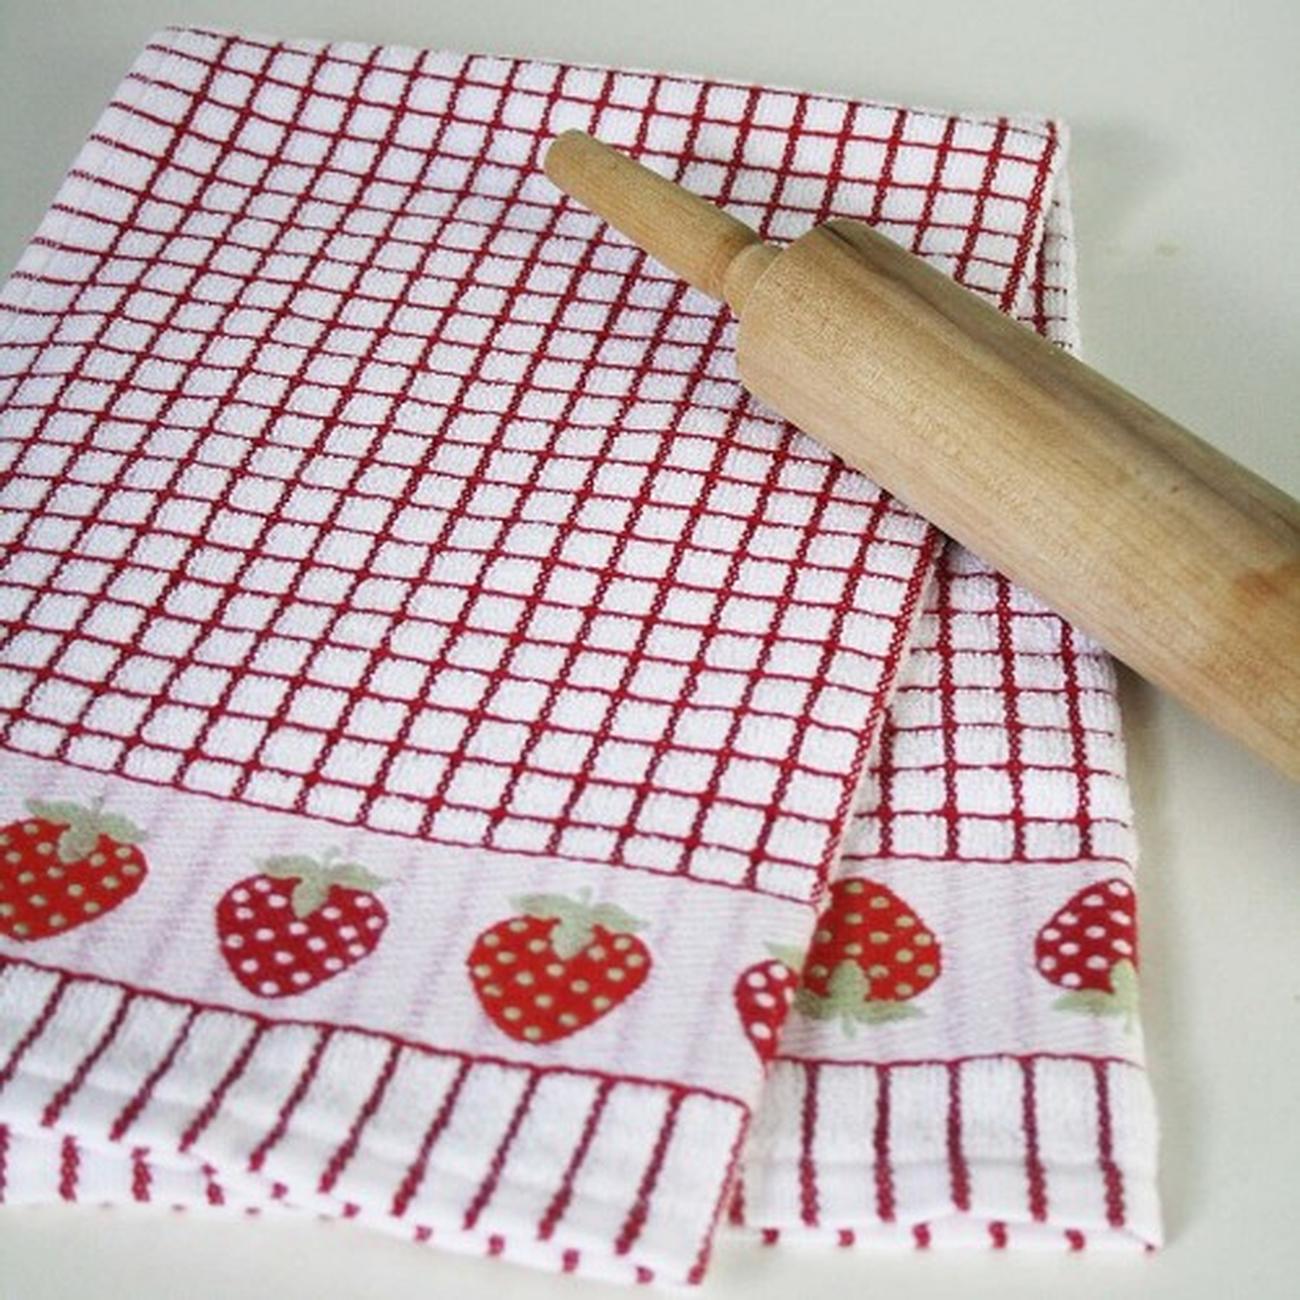 samuel-lamont-poli-dry-tea-towel-red-strawberries - Samuel Lamont Poli Dri Tea Towel Red Strawberries